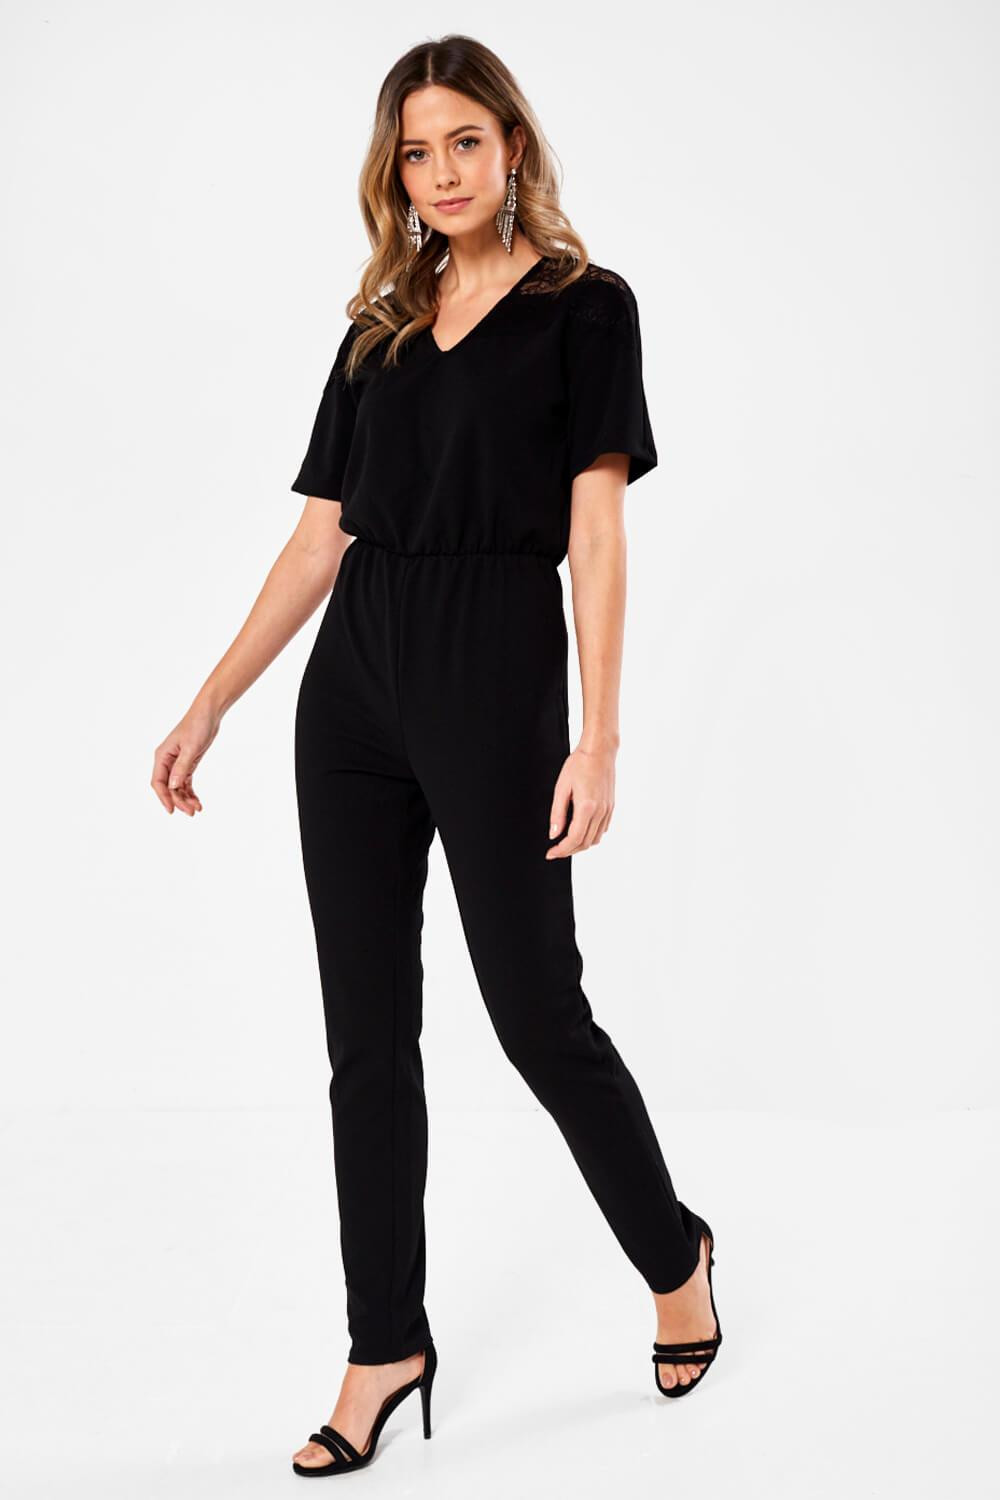 JDY Kappa Short Sleeve Jumpsuit in Black | iCLOTHING